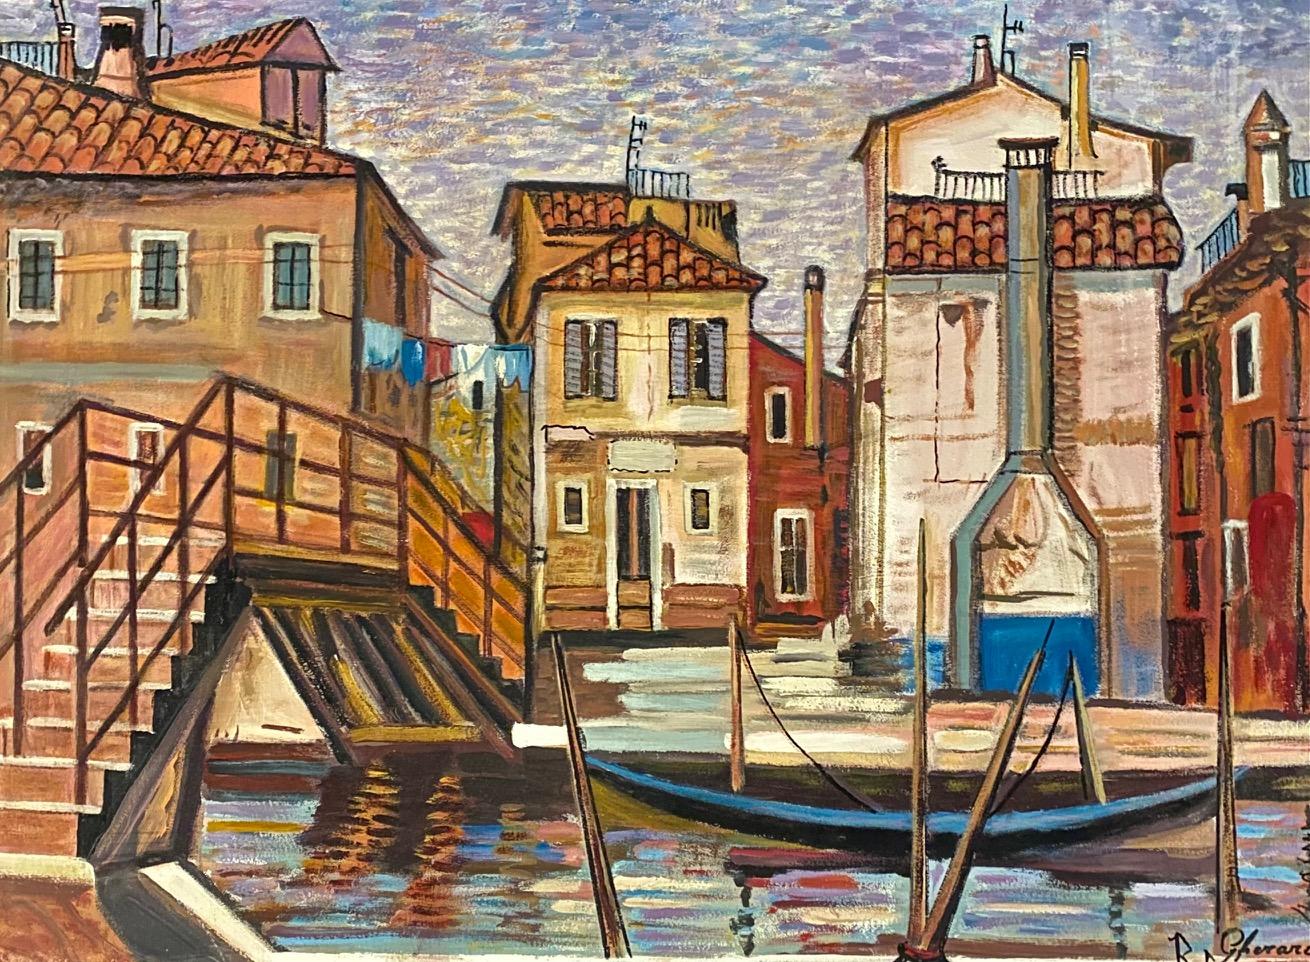 Œuvre sur toile avec cadre. Dimensions totales avec cadre 81x65 cm 

Roberto Gherardi est un peintre italo-genevois né en 1933 à Ascensione, dans le nord de l'Italie, près de Bergame.
L'après-guerre étant rude, la pauvreté frappe sa famille et